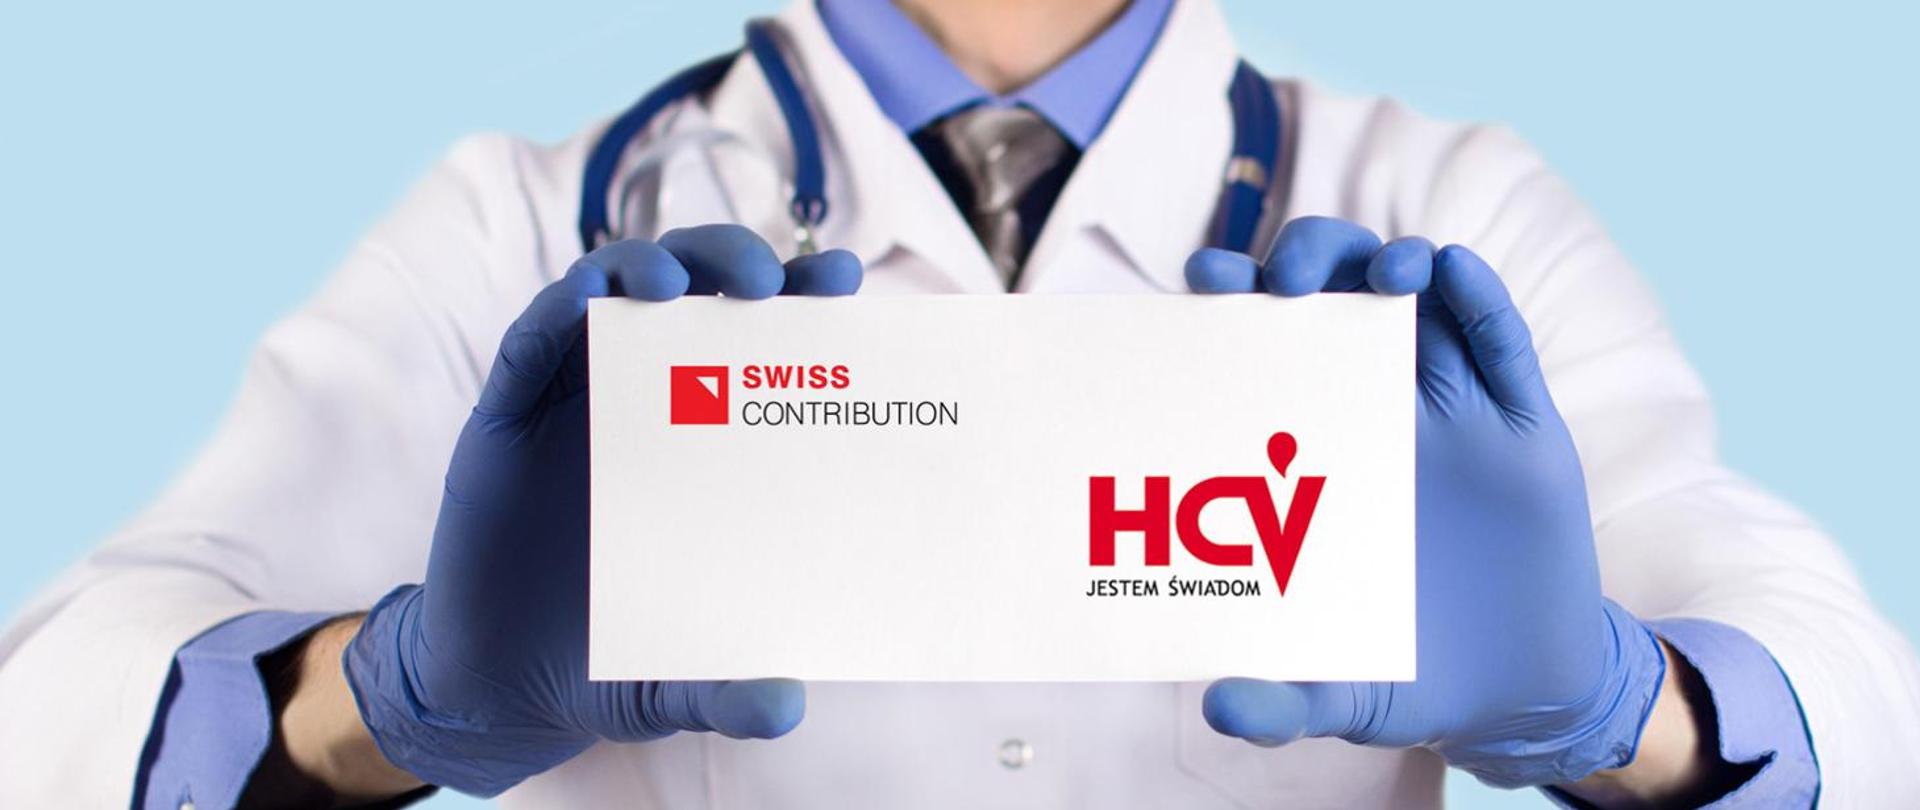 grafika przedstawia osobę w stroju lekarza i z rękawiczkami trzymającą wizytówkę z napisem SWISS CONTRIBUTION HCV JESTEM ŚWIADOM